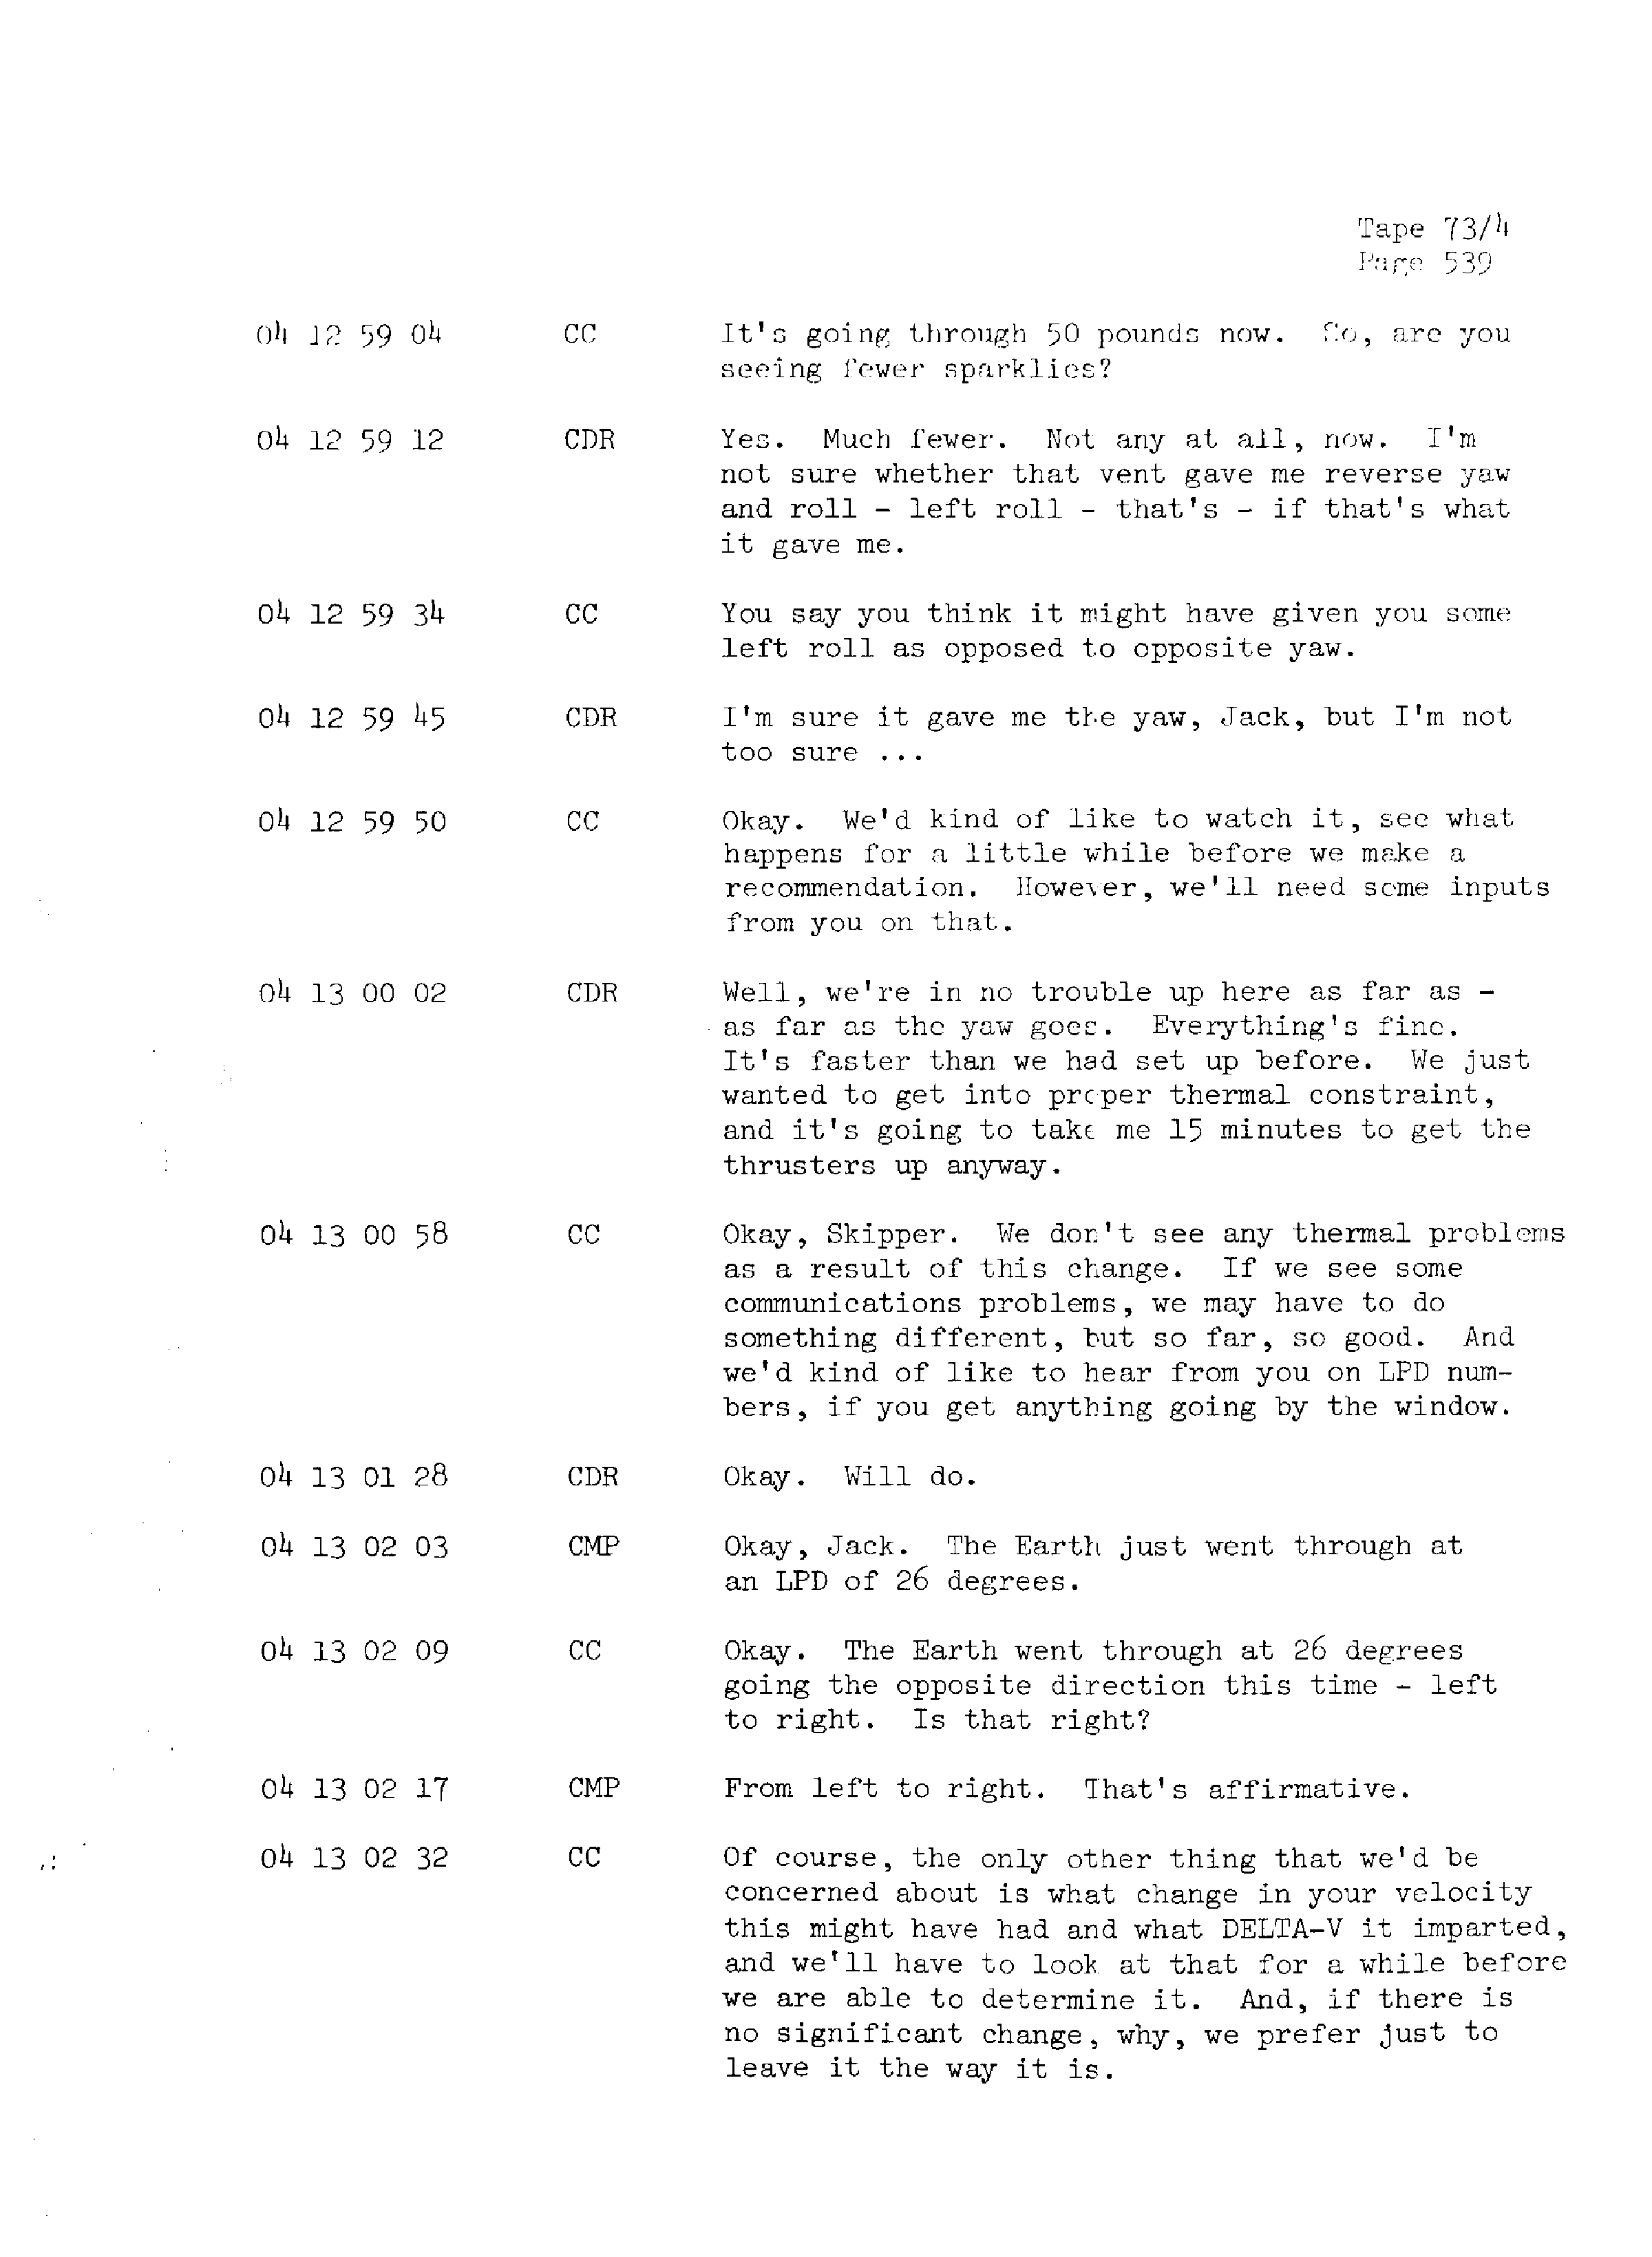 Page 546 of Apollo 13’s original transcript